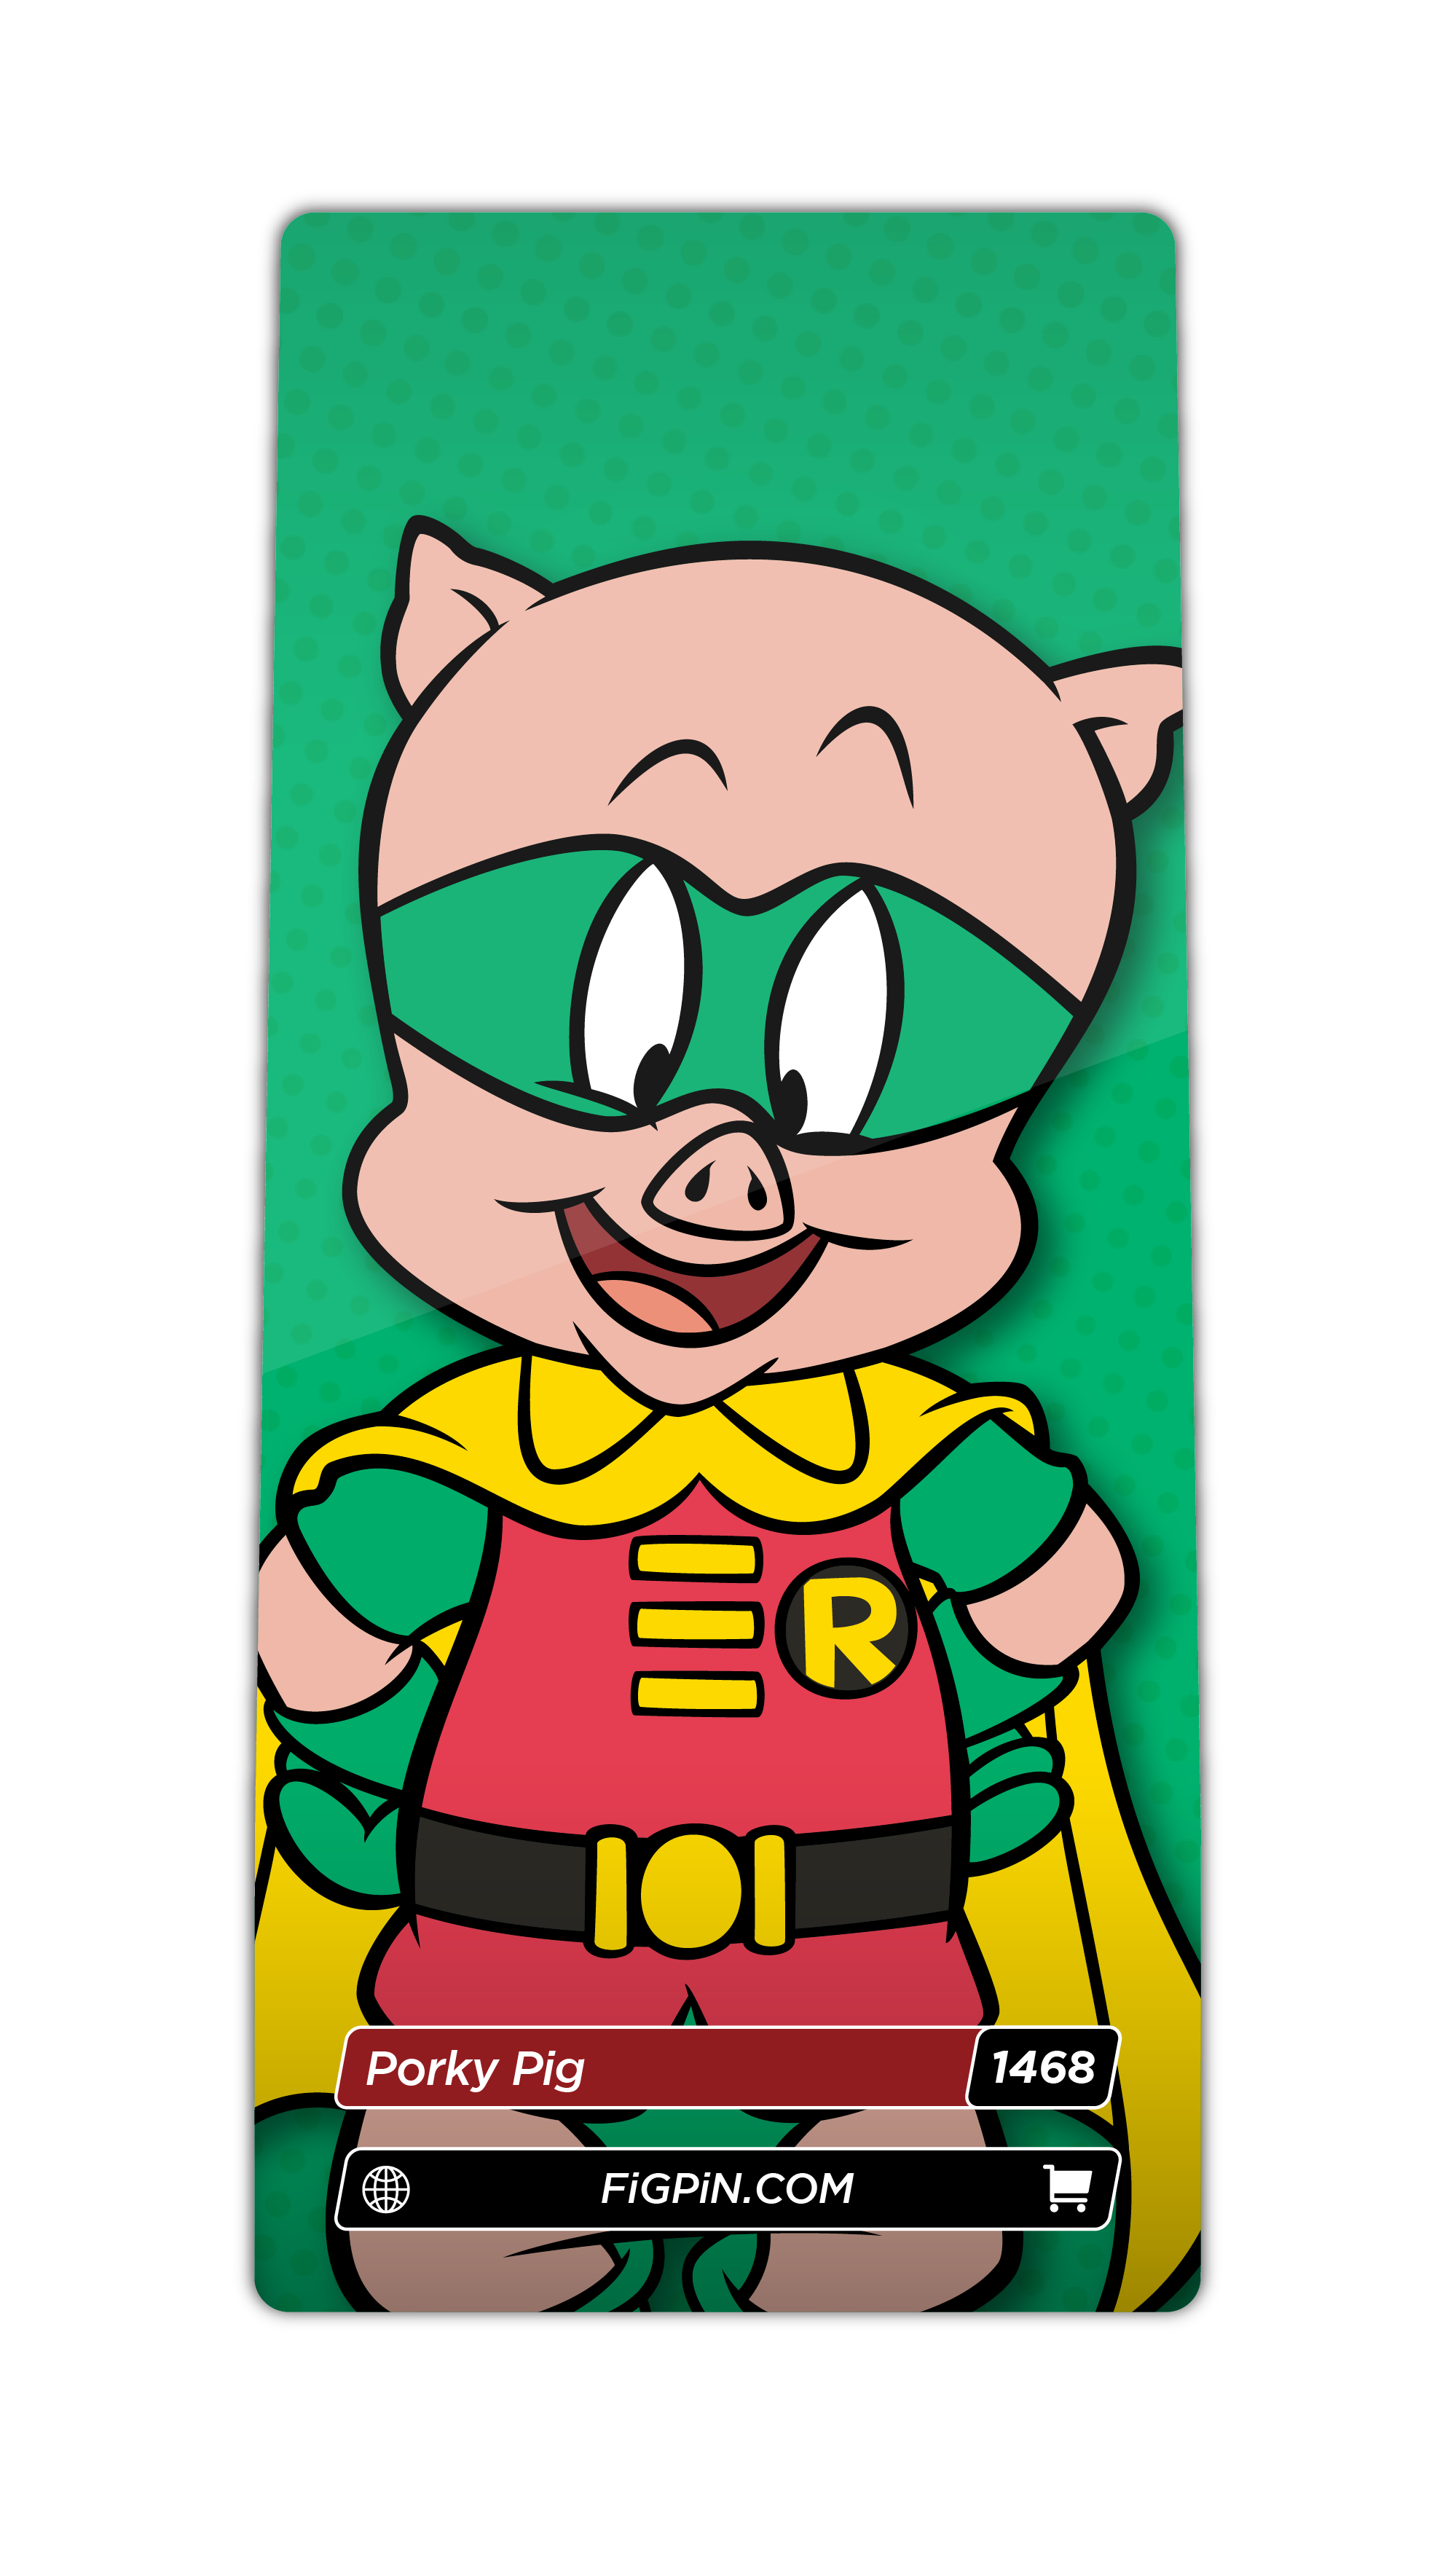 Porky Pig (1468)